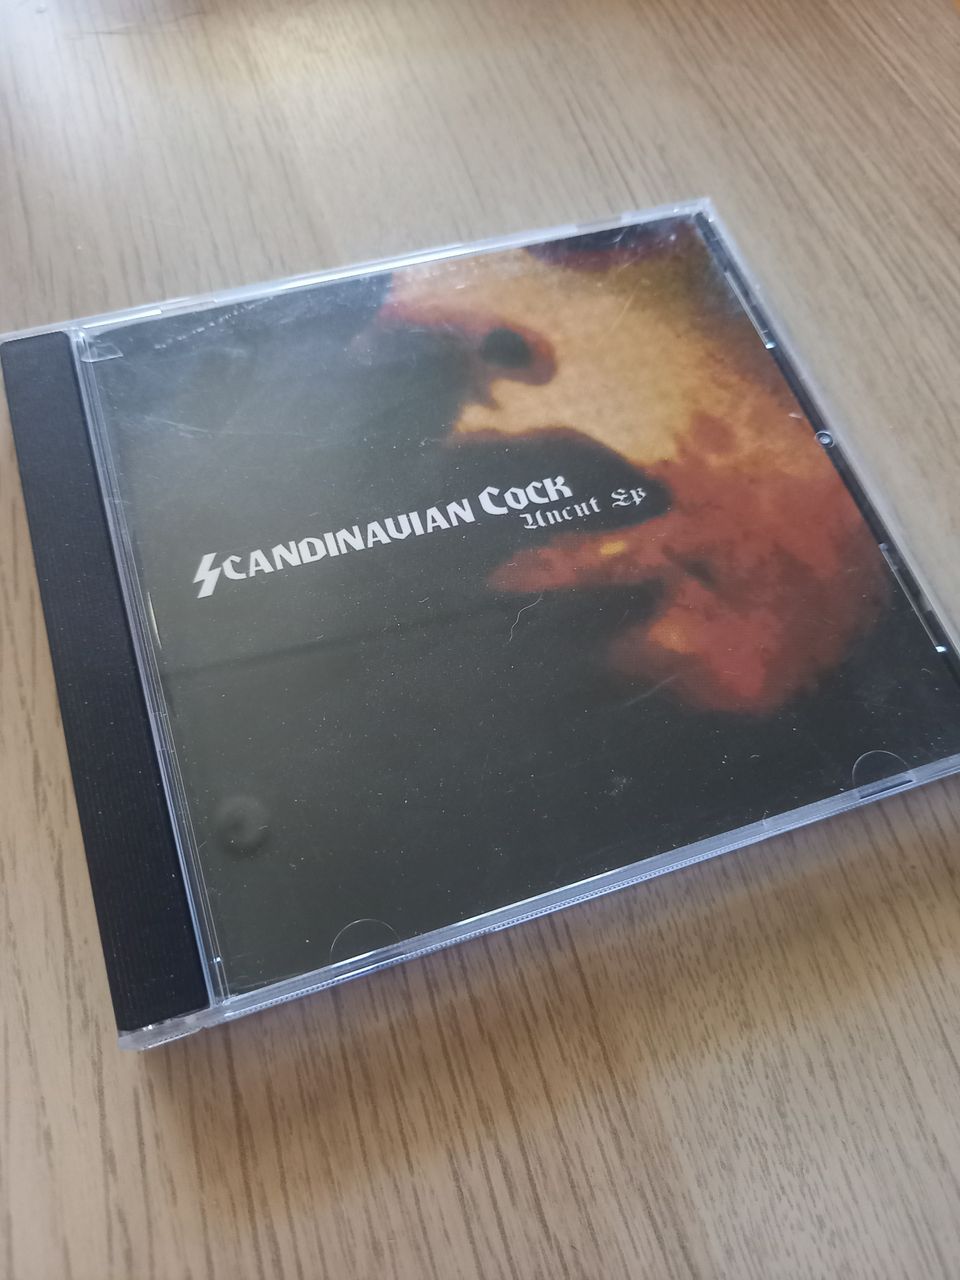 Scandinavian cock - Uncut Ep CD